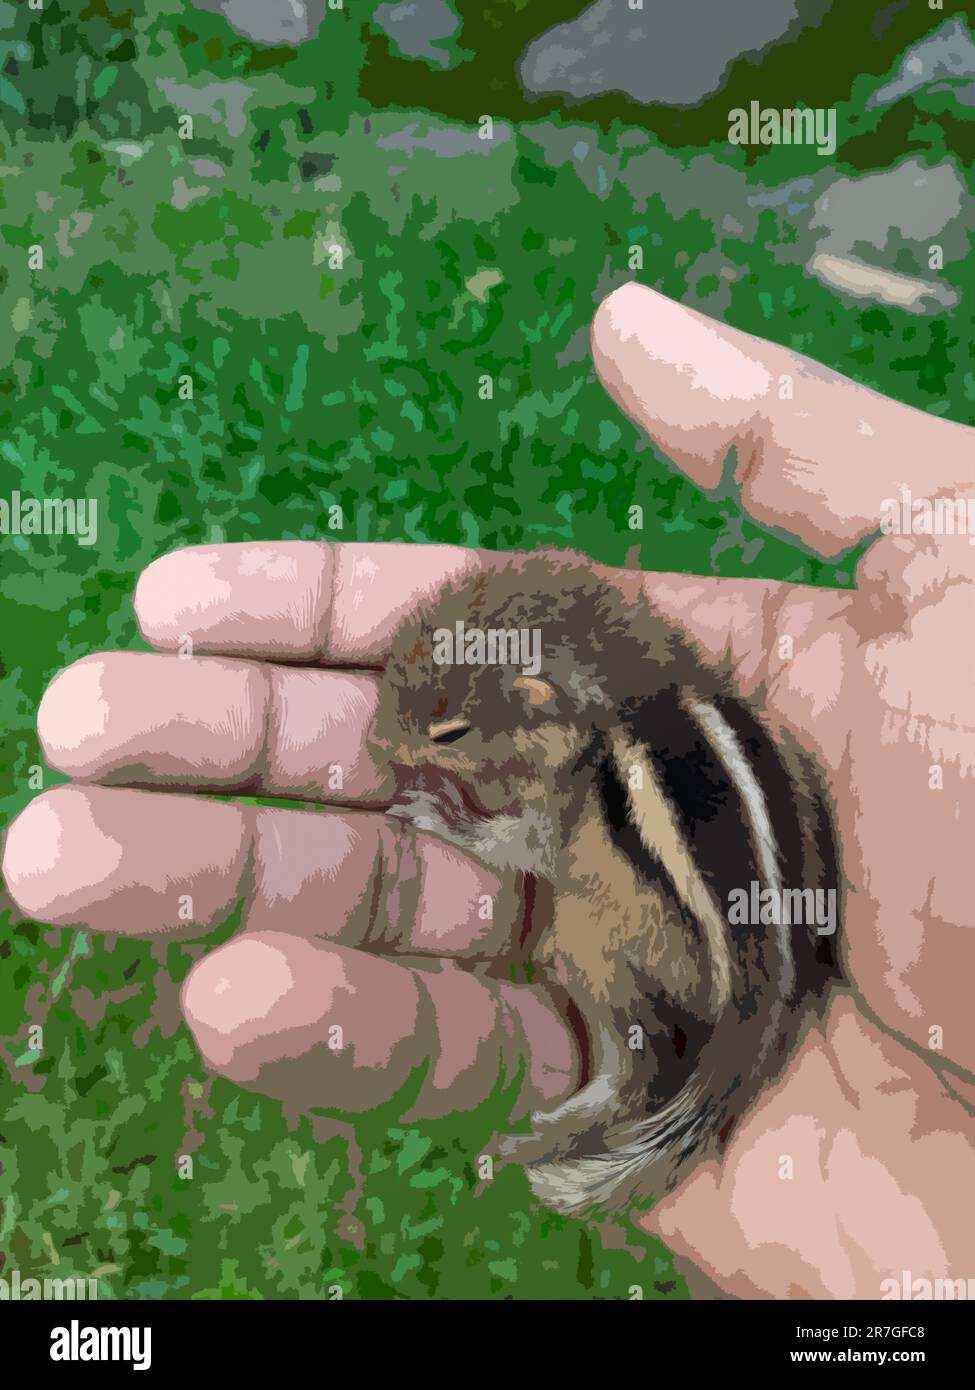 Accattivante Squirrel: Un simpatico animale domestico nella fauna selvatica - illustrazione della copertina del libro degli animali ispirata alla natura per gli amanti degli animali Foto Stock